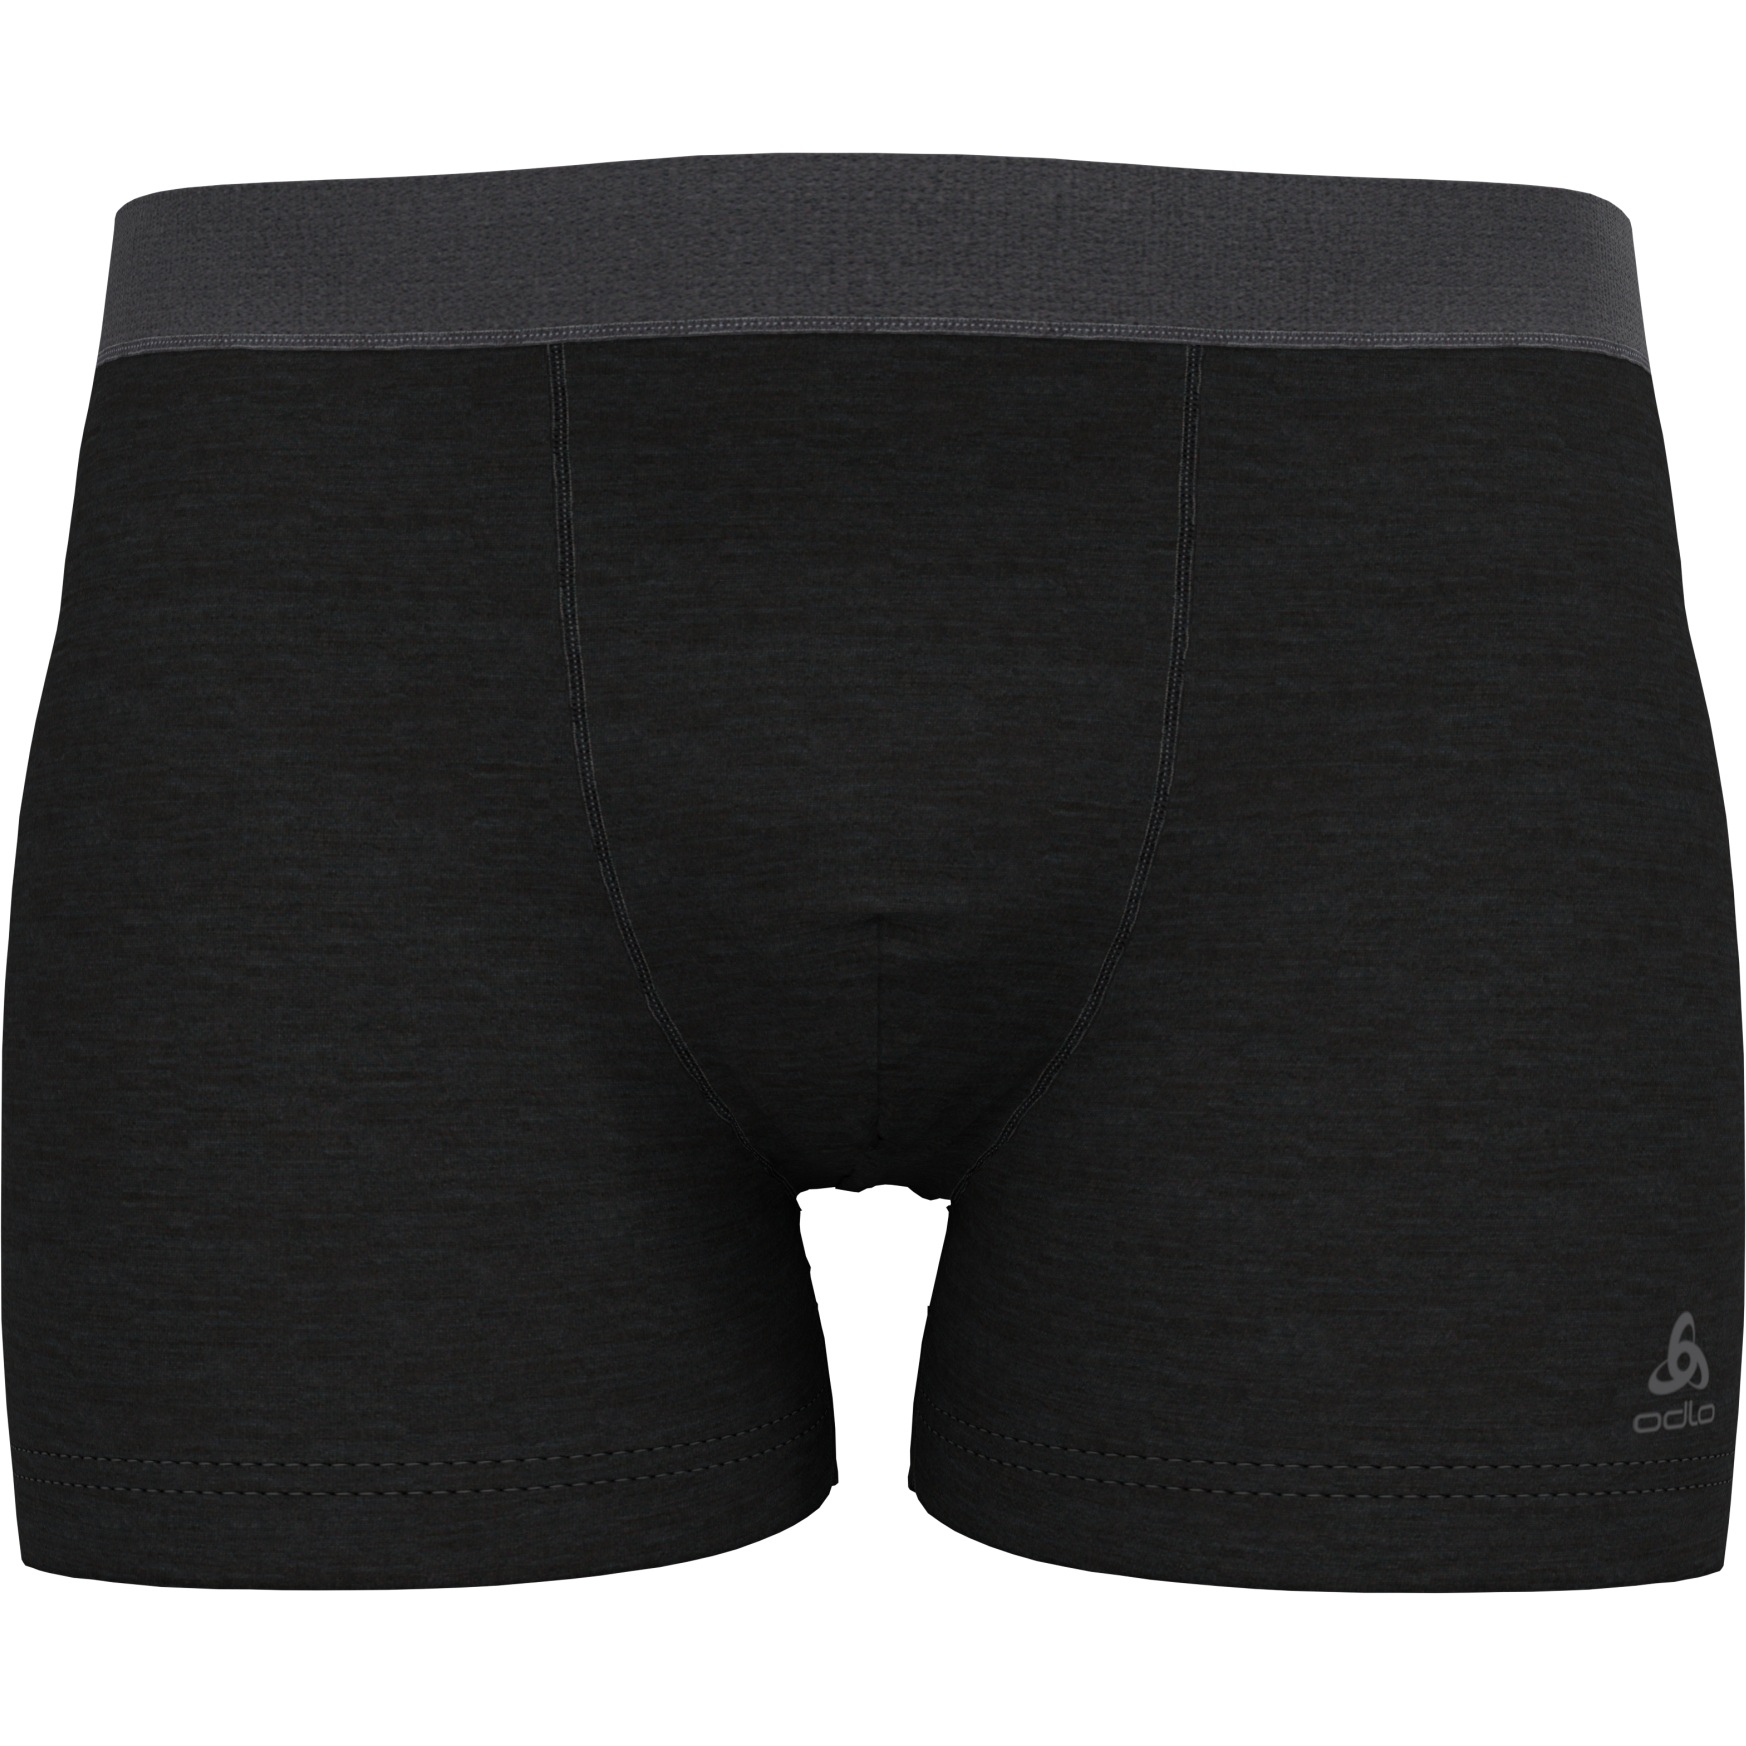 Produktbild von Odlo Herren Natural Performance Wool 130 Boxershorts - schwarz